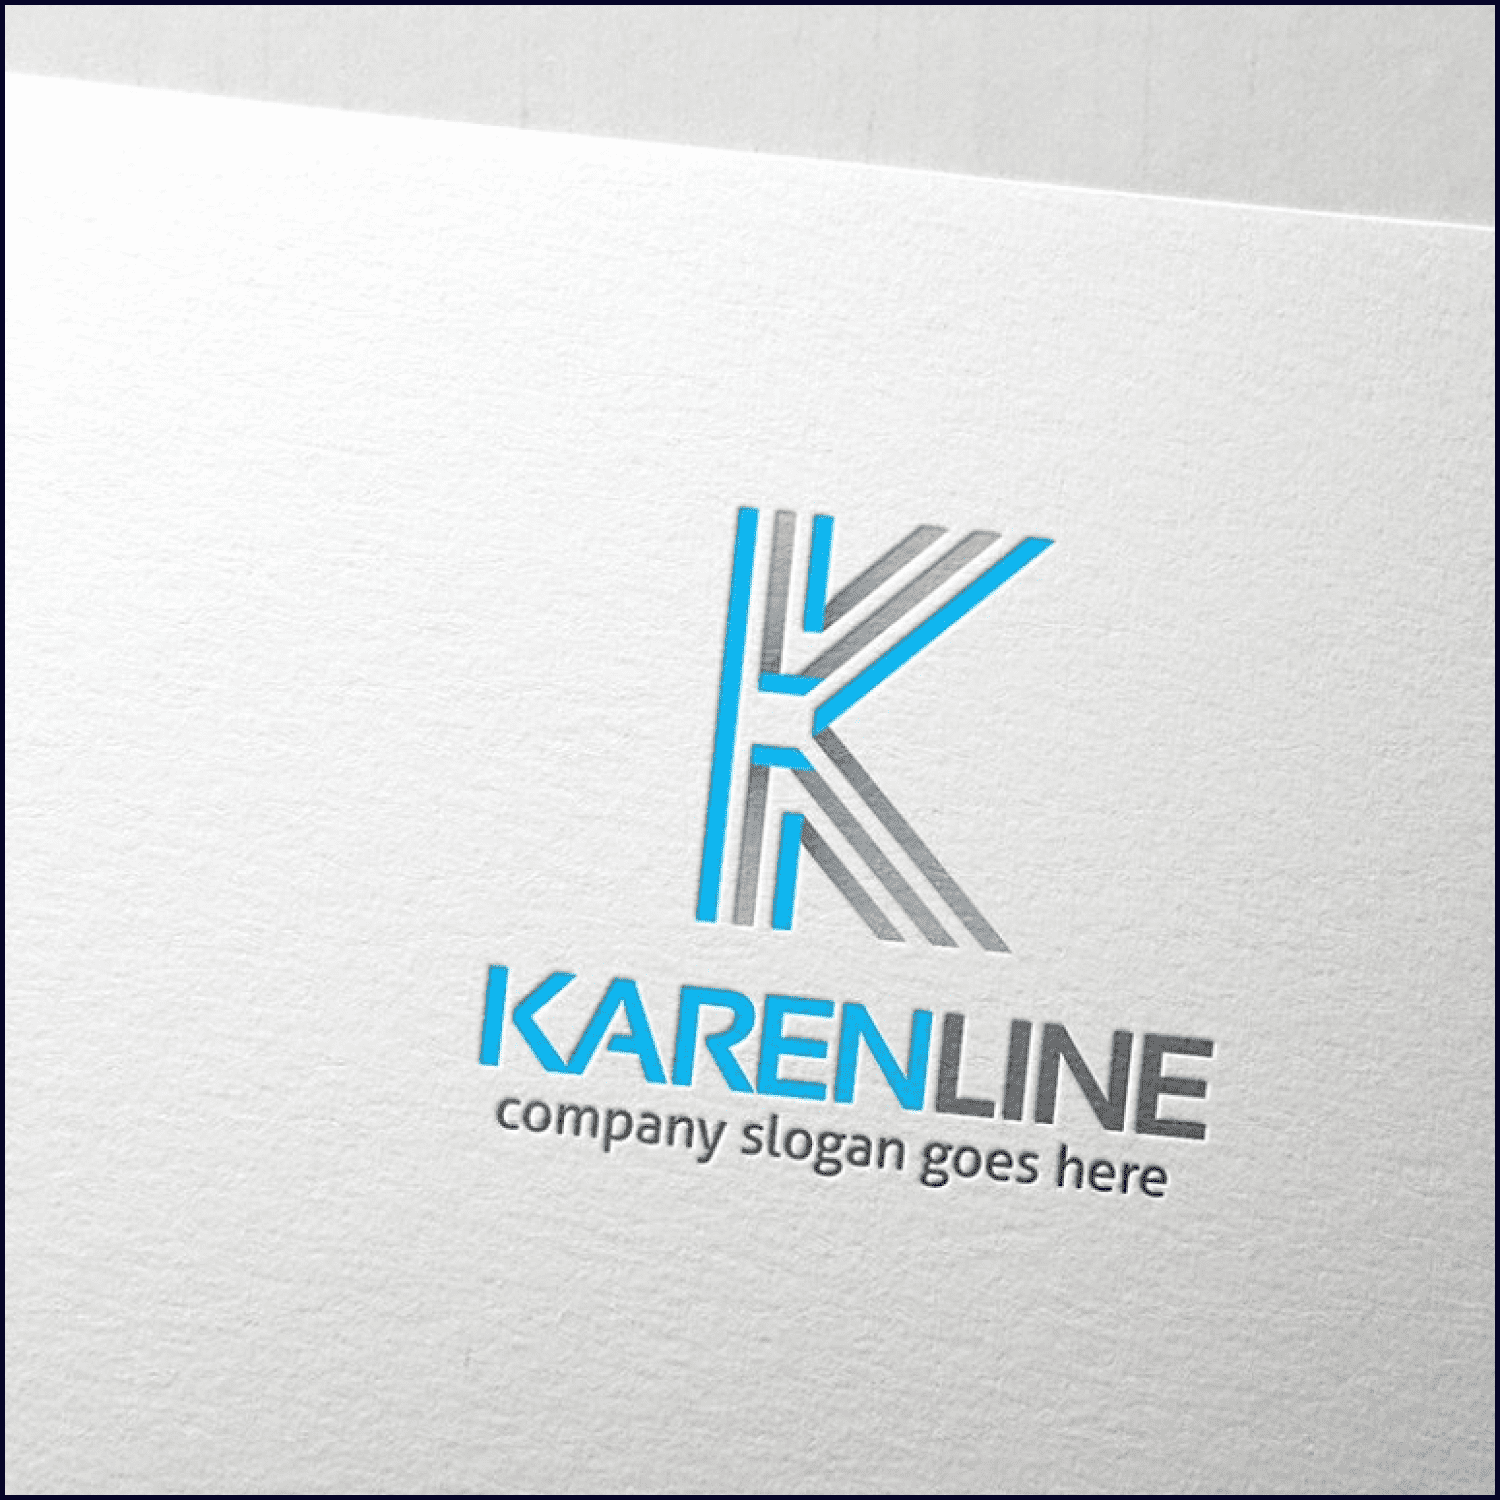 Karen Line Letter K Logo cover.